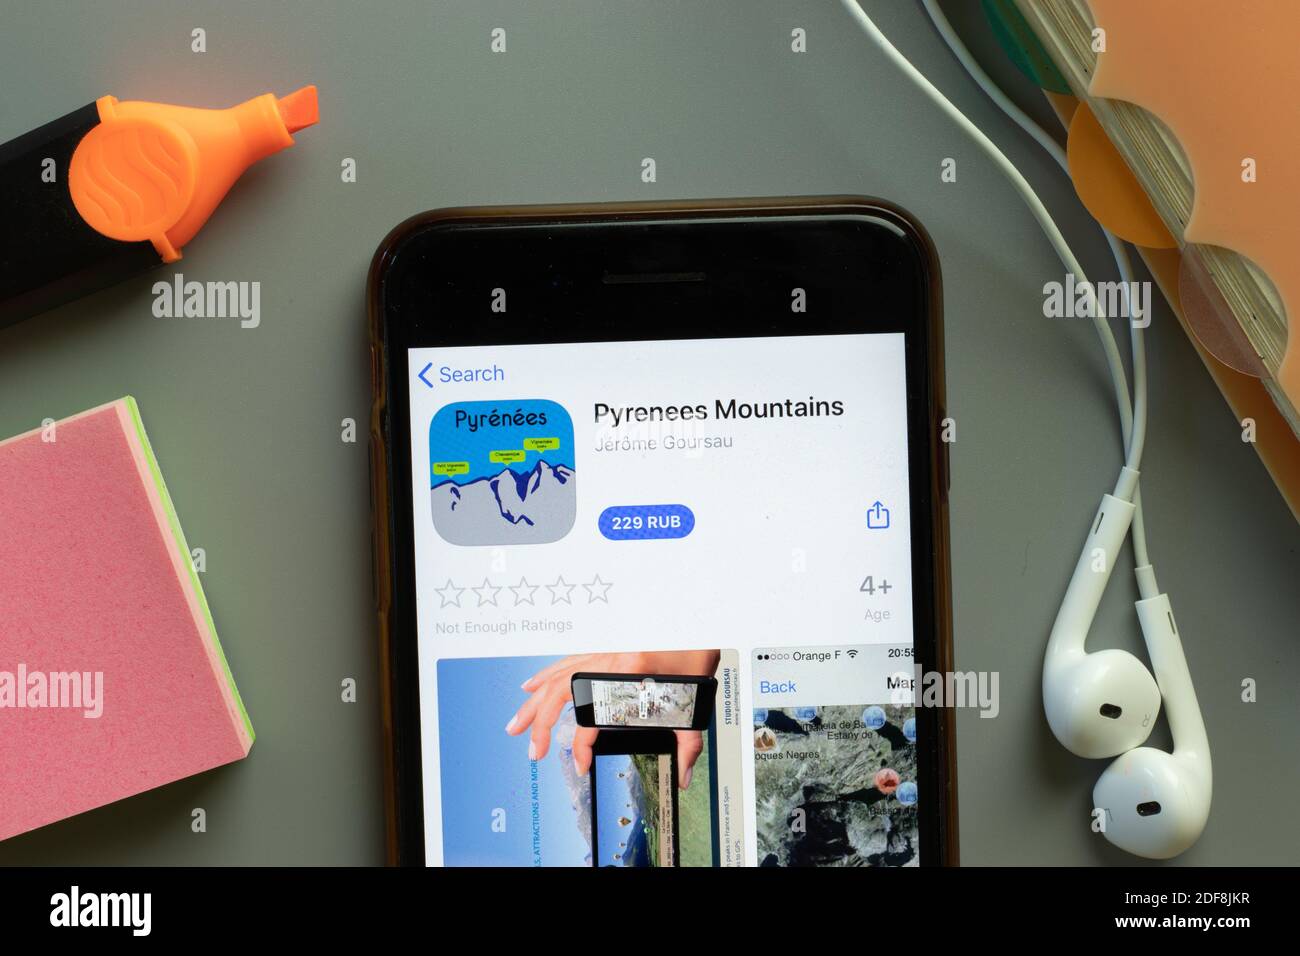 New York, USA - 1 dicembre 2020: Icona dell'app mobile Pyrenees Mountains sullo schermo del telefono vista dall'alto, editoriale illustrativo. Foto Stock